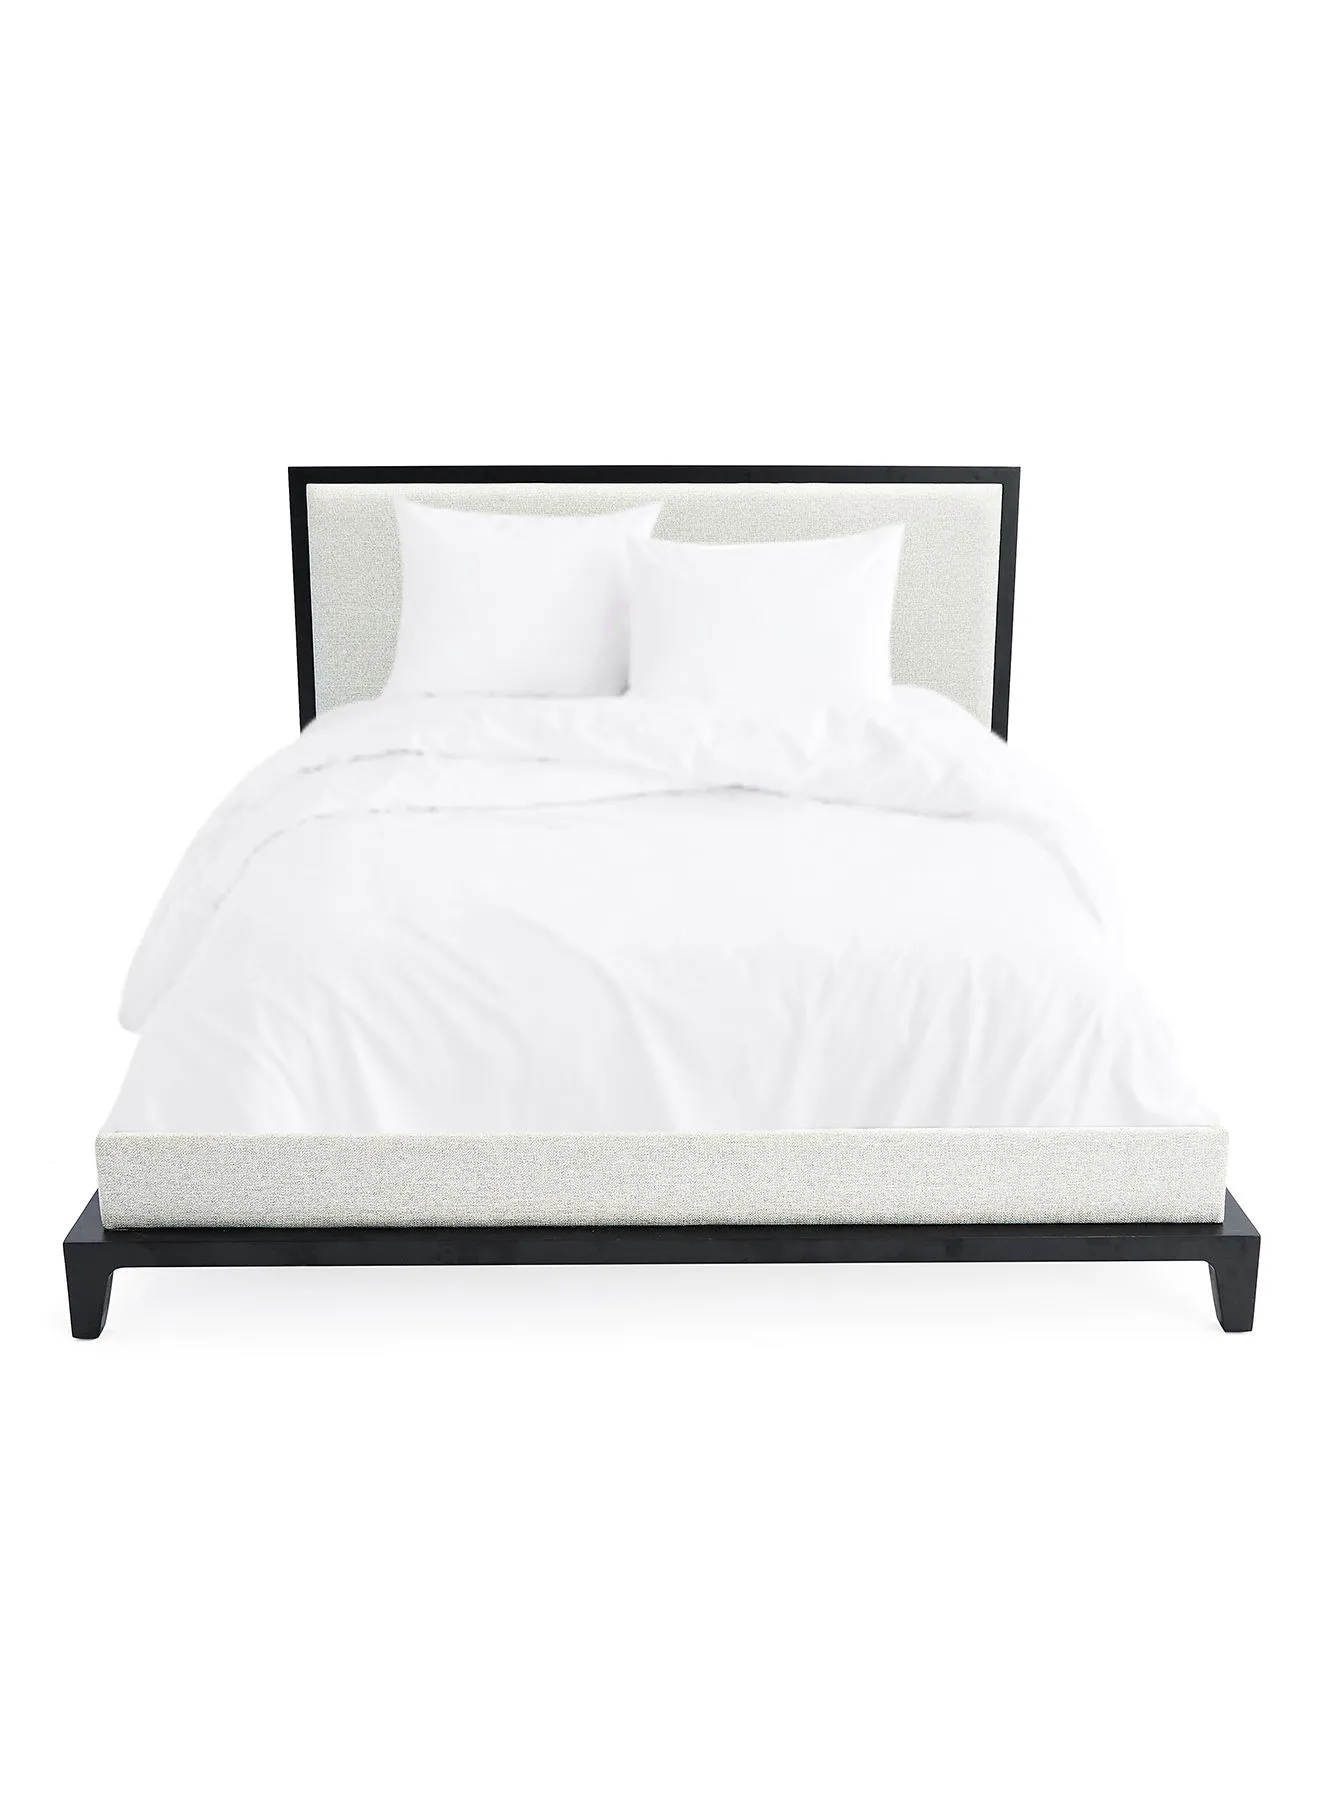 إطار سرير ebb & flow فاخر - سرير بحجم كوين - مجموعة مسمار أنيقة - لون أسود / أوف وايت - مقاس 1660 × 2080 × 1100 - منزل فاخر